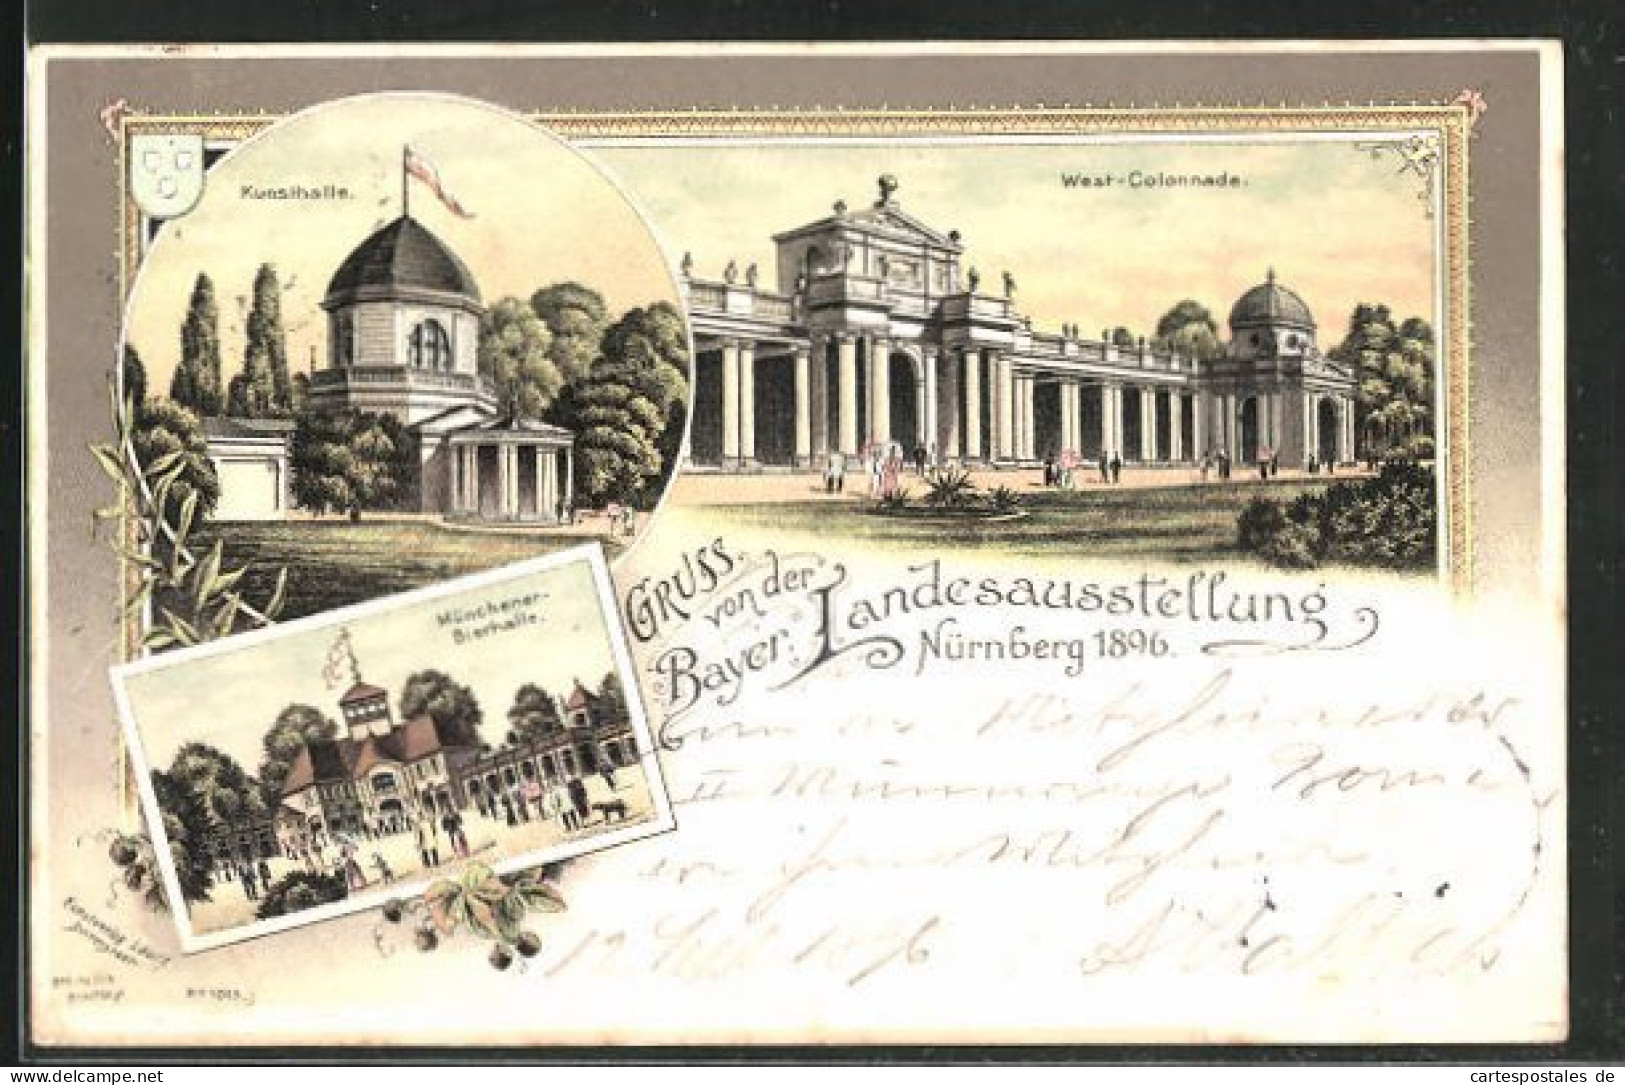 Lithographie Nürnberg, Bayr. Landesausstellung 1896, Münchner Bierhalle, Kunsthalle & Westcolonnade  - Exhibitions